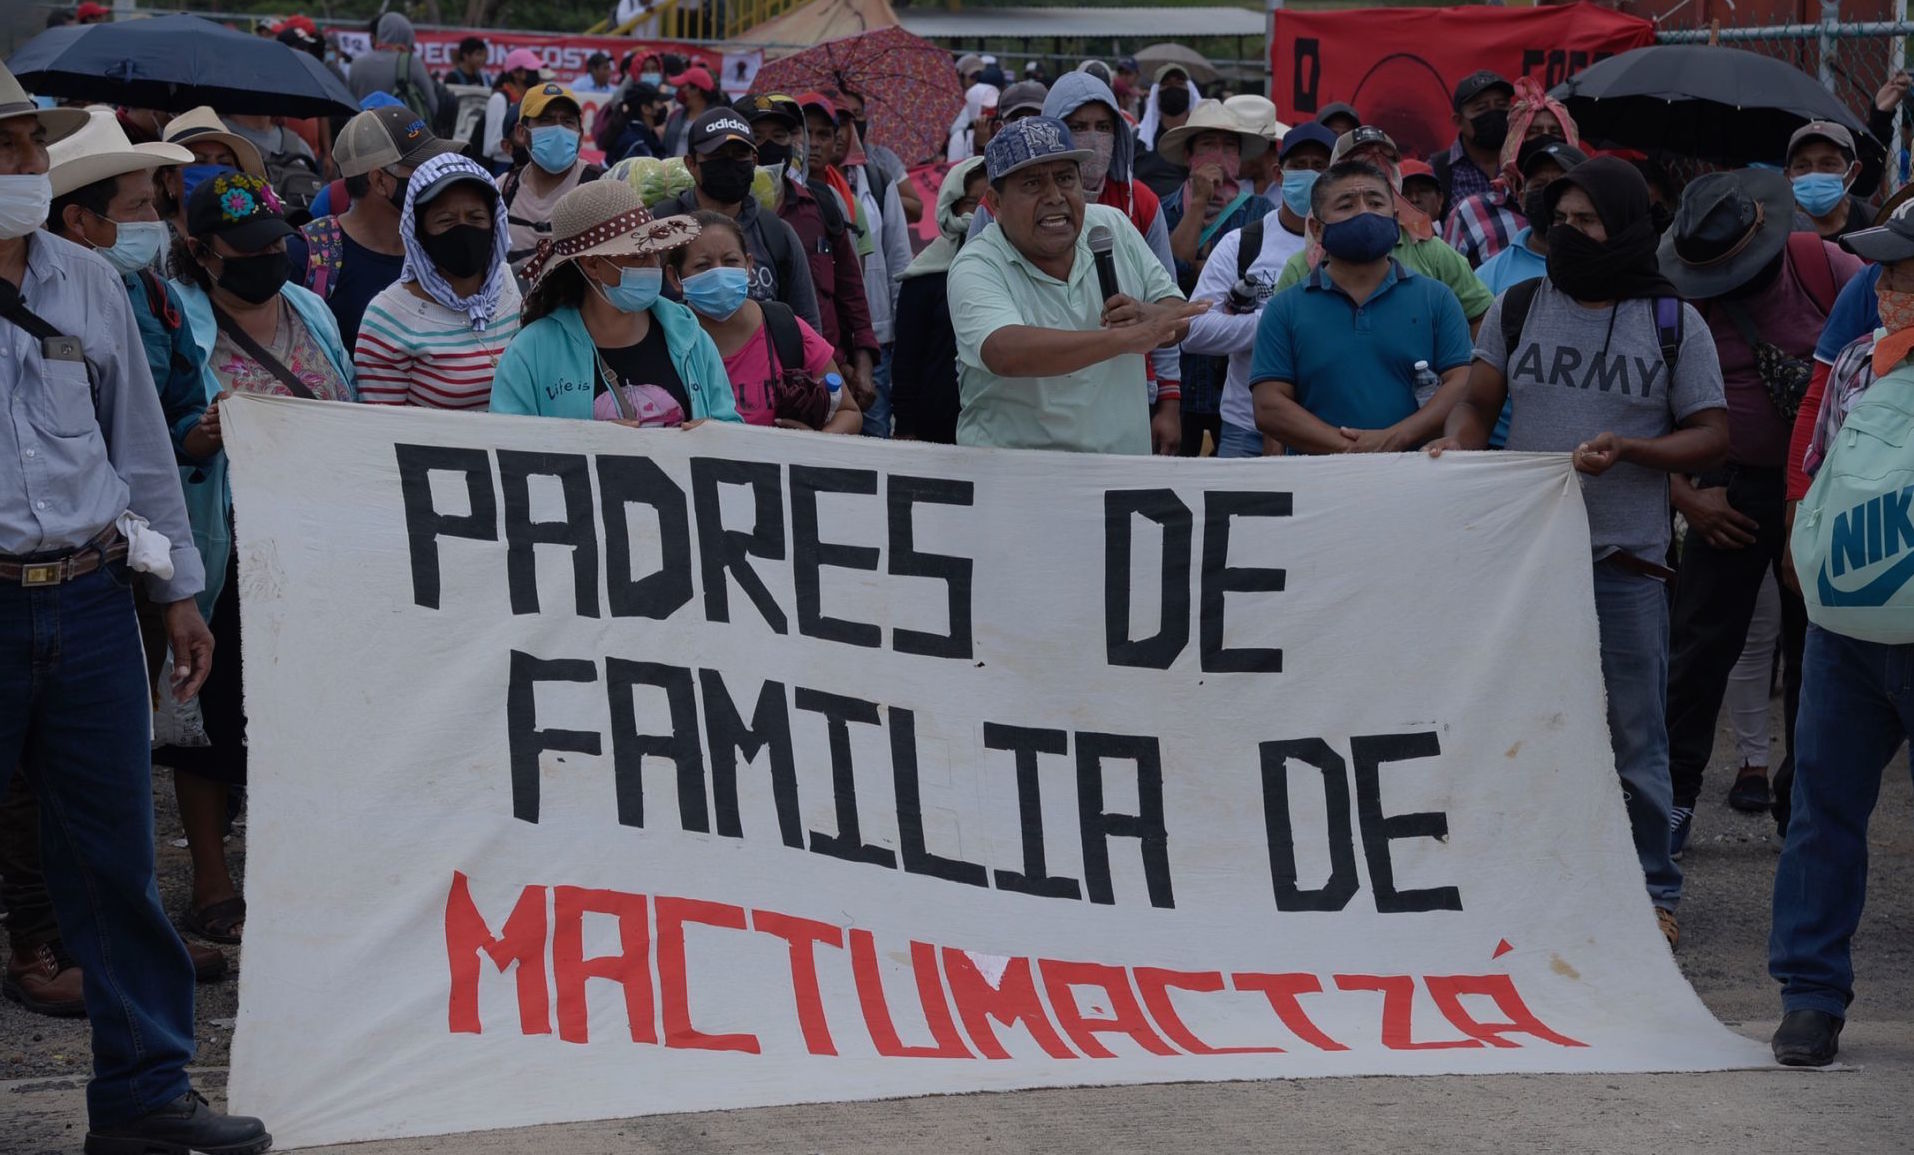 Dan prisión preventiva a 19 normalistas de Mactumactzá en Chiapas